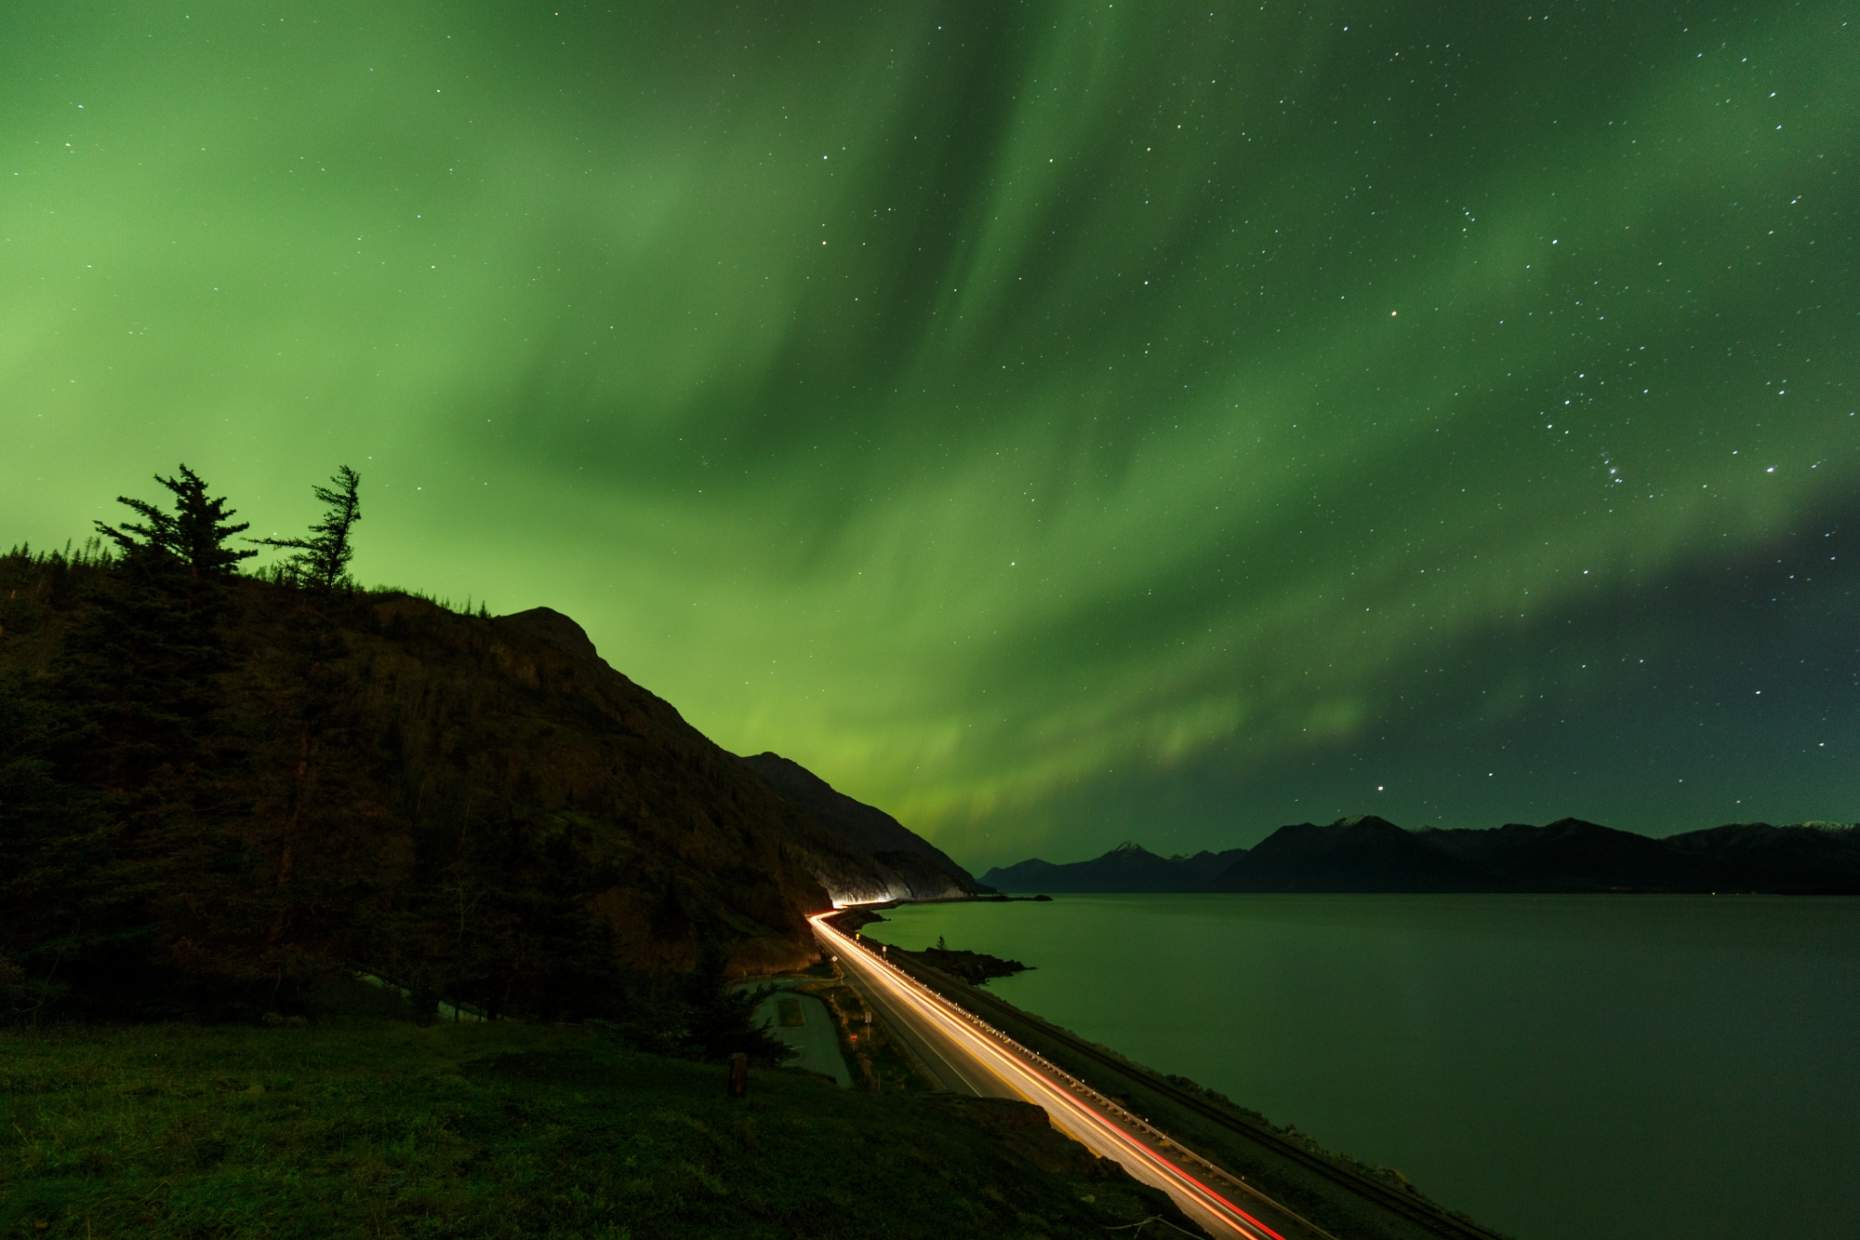 Jeff Schultz Anchorage Northern Lights Viewing 161013 5 M9041